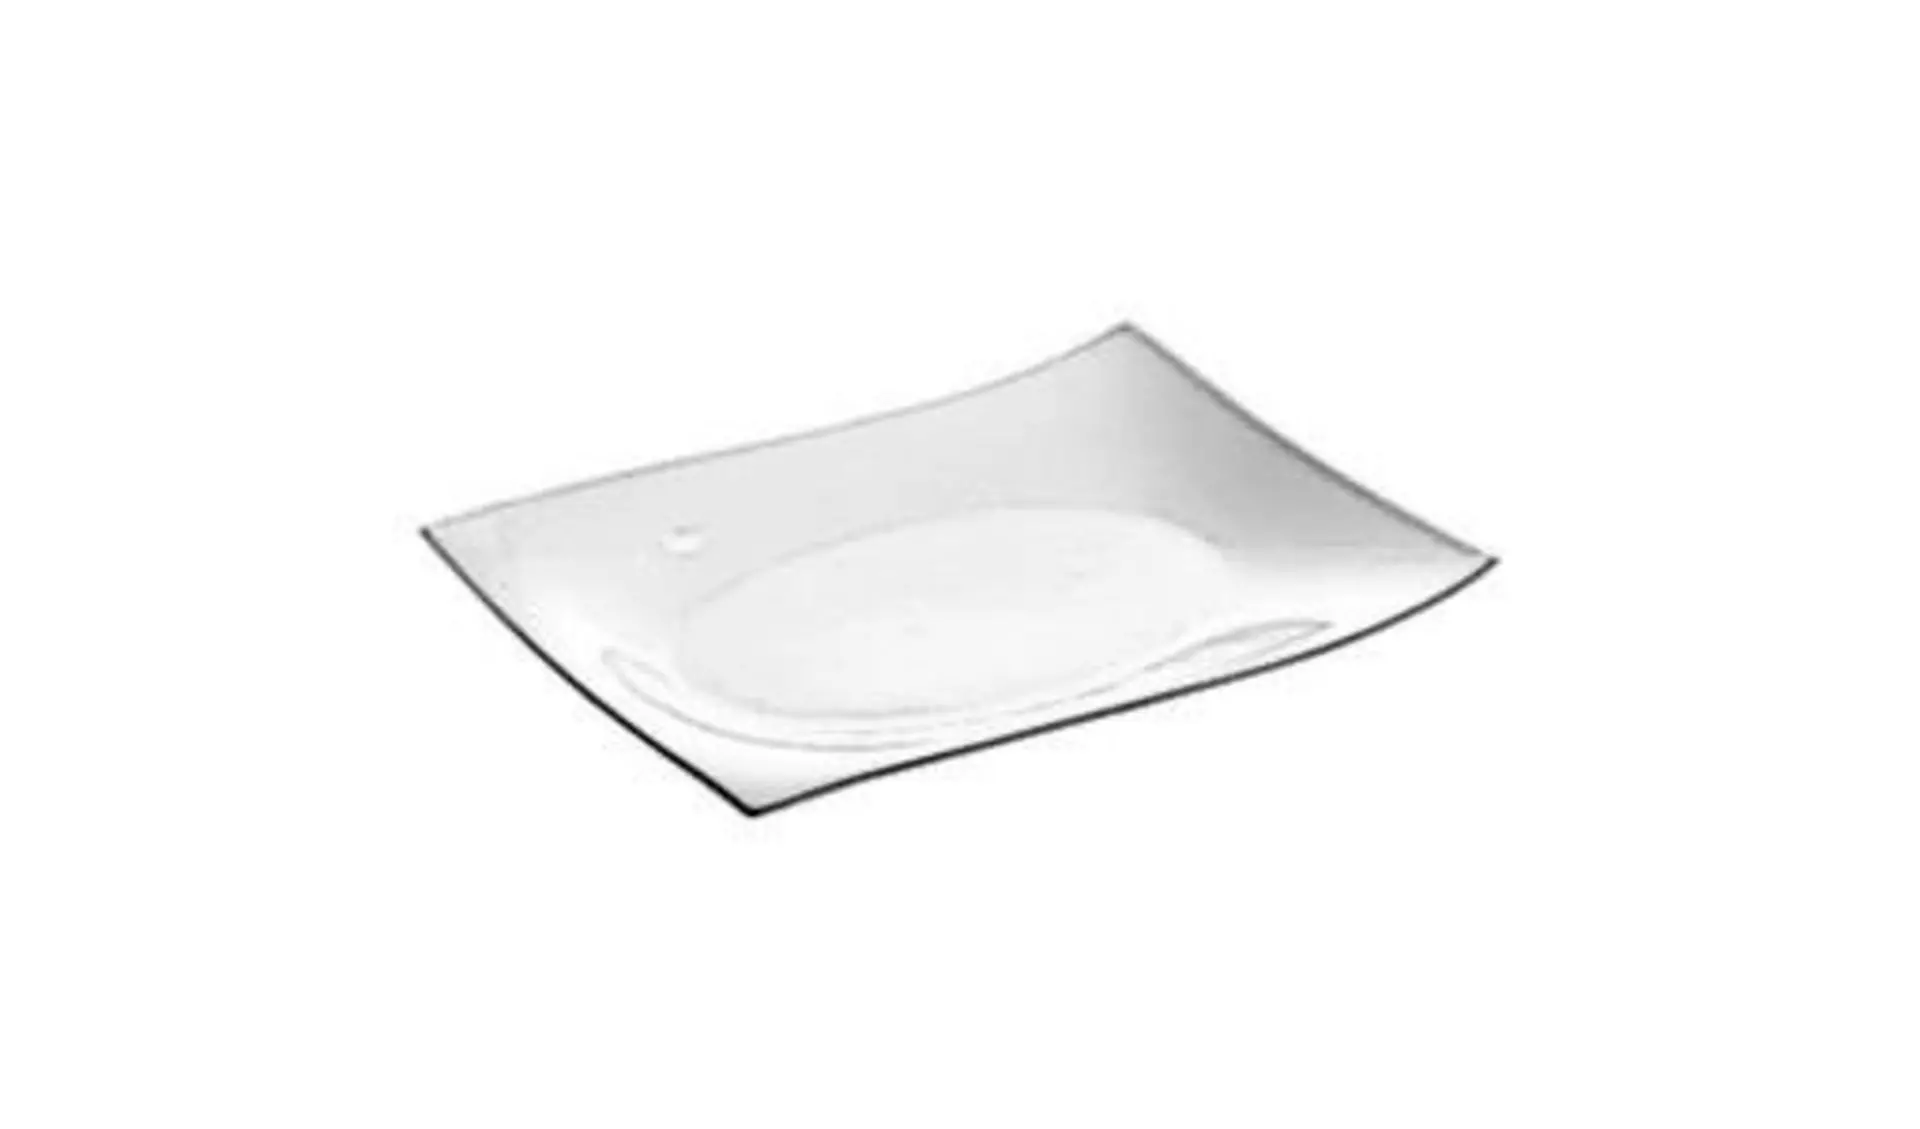 Moderner rechteckiger Teller aus weißem Porzellan steht für alle Teller innerhalb der Produktwelt.